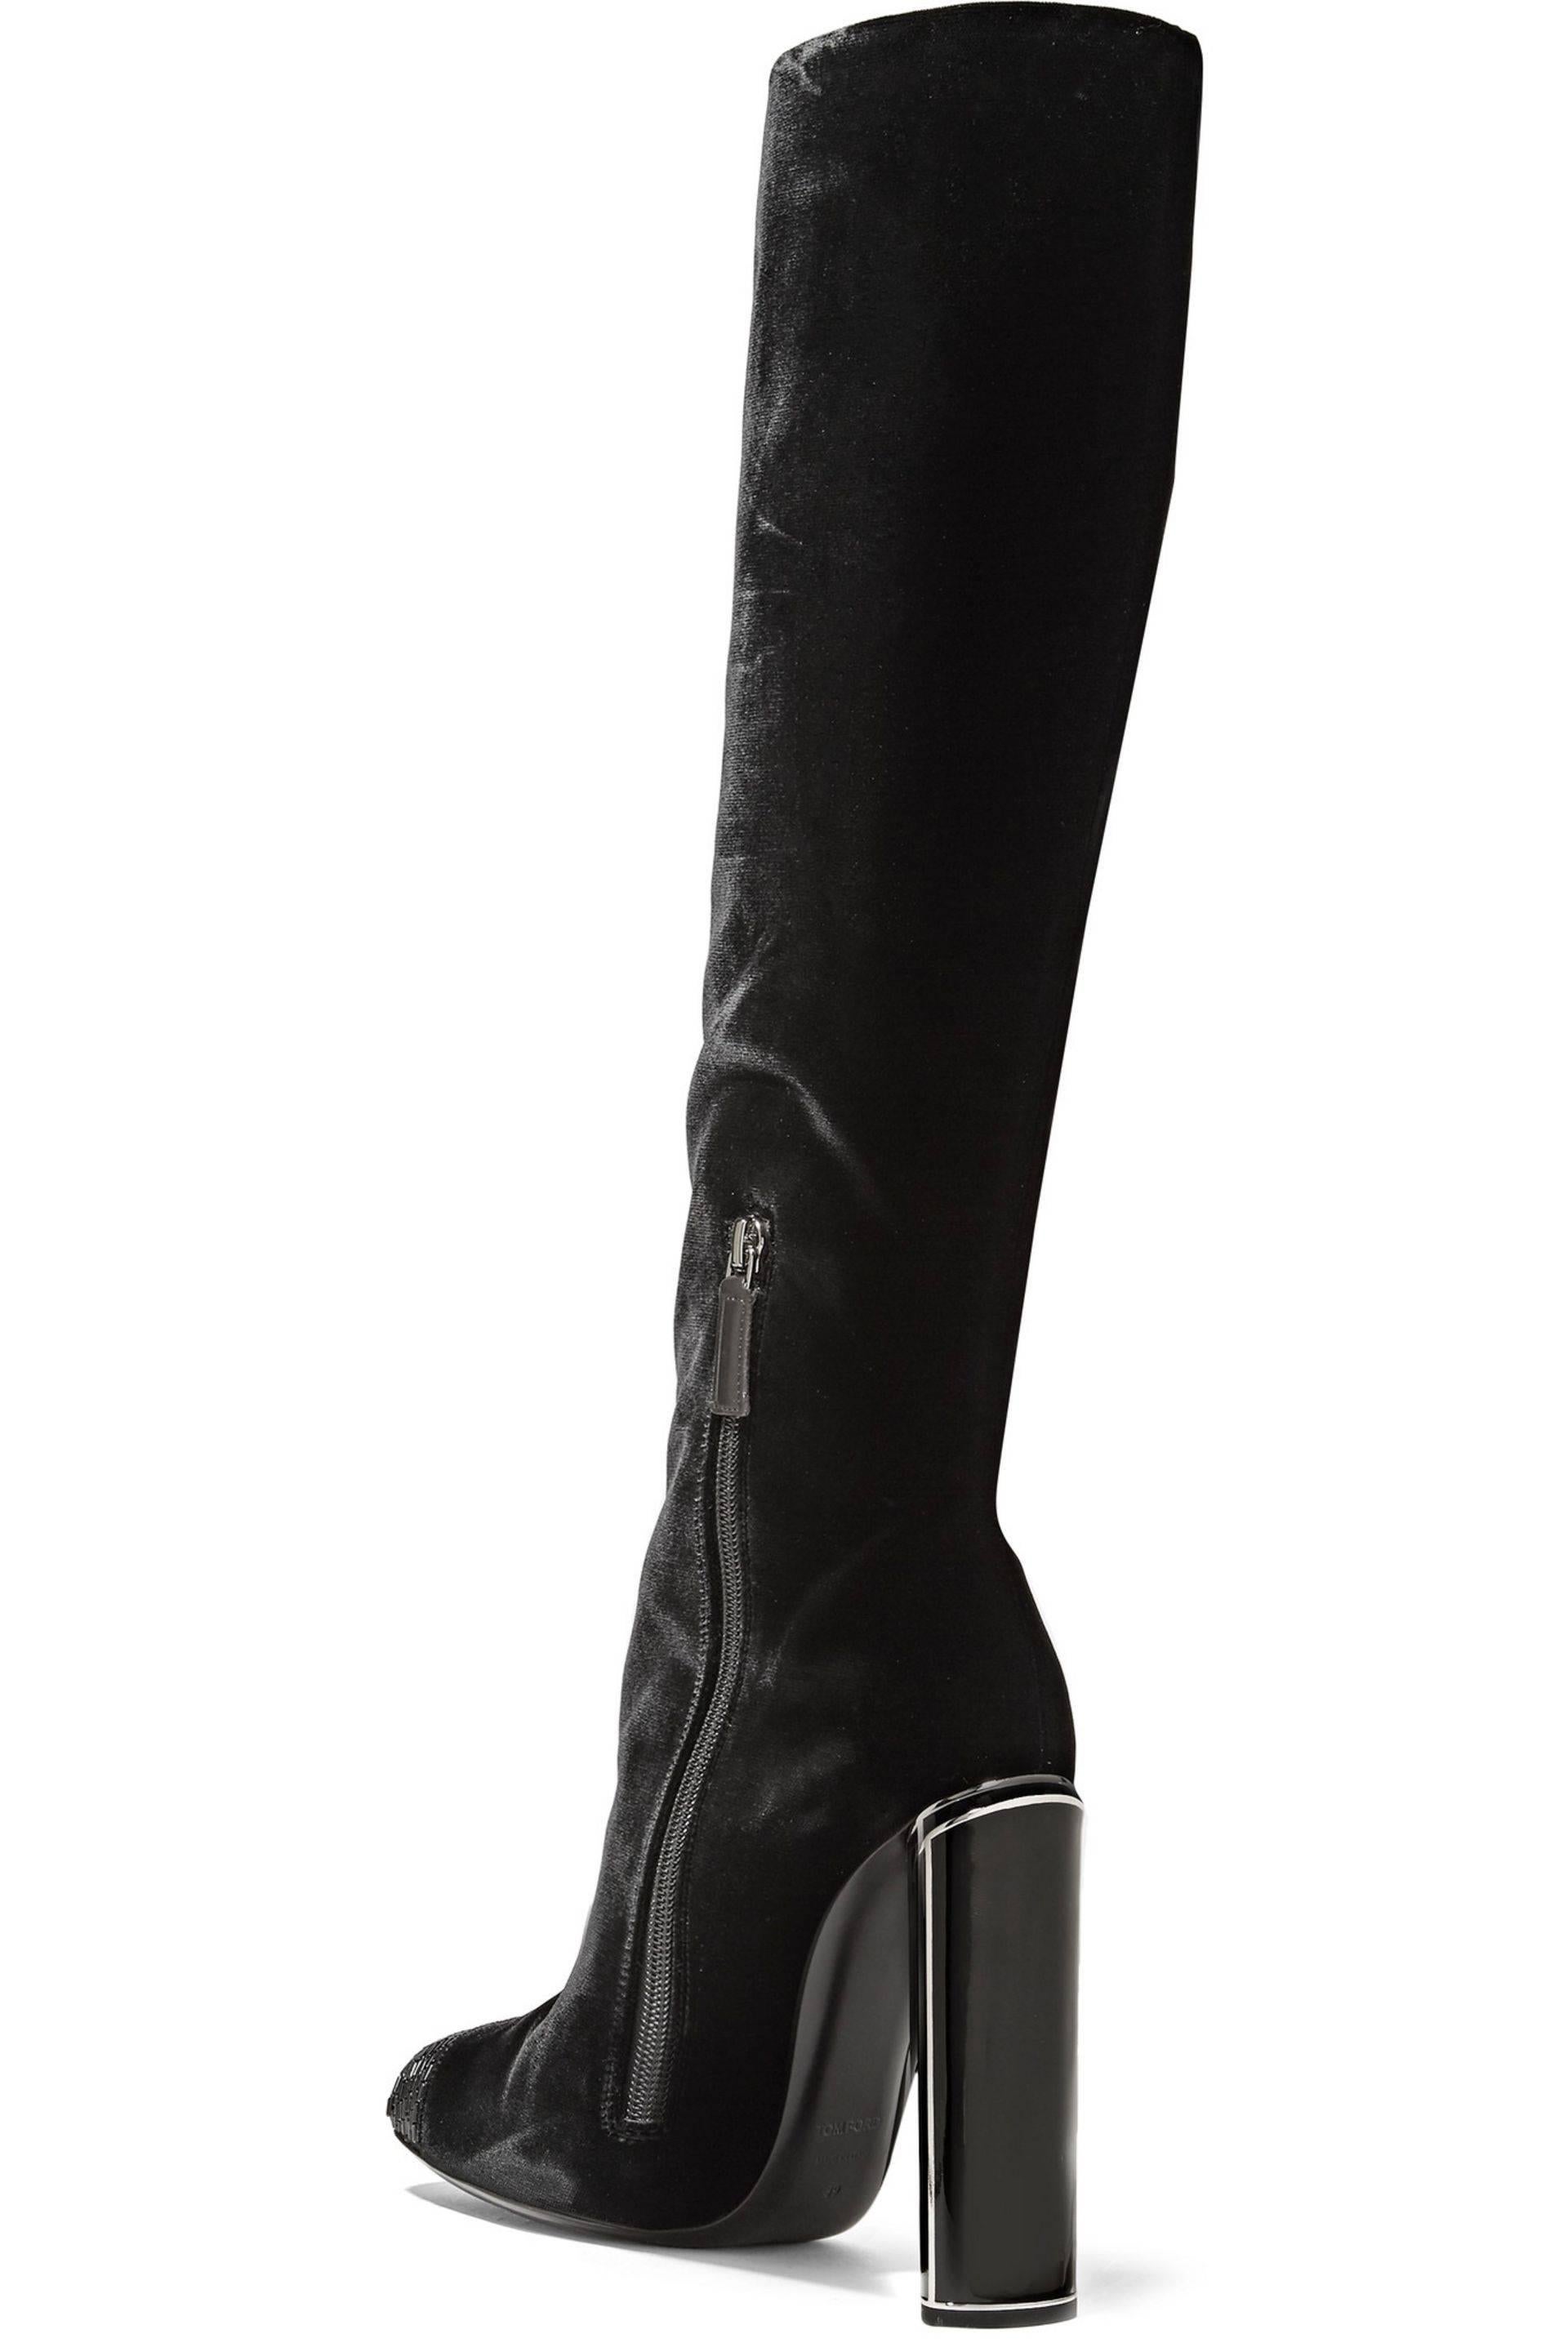 Women's New $2700 Tom Ford Bead-embellished Black Velvet High Heel Boots 36.5 - 6.5